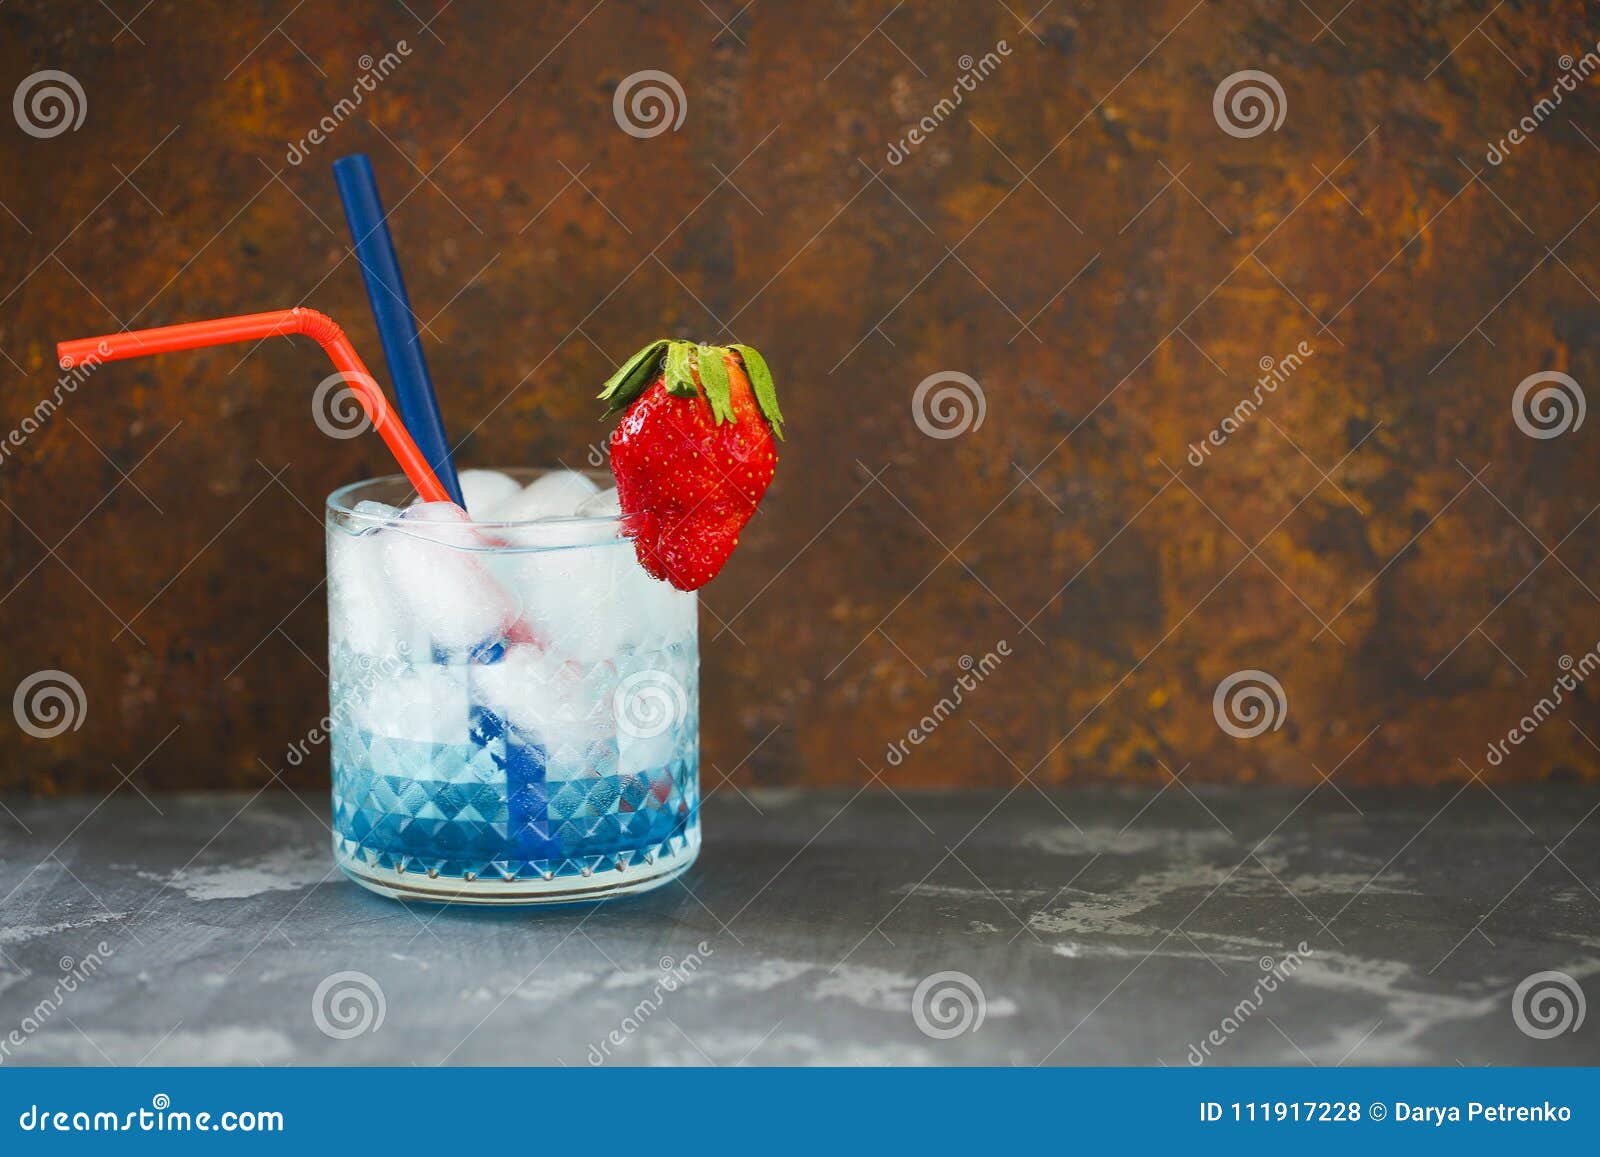 Blaue Lagune Des Cocktails Auf Dem Dunklen Hintergrund Stockfoto - Bild ...